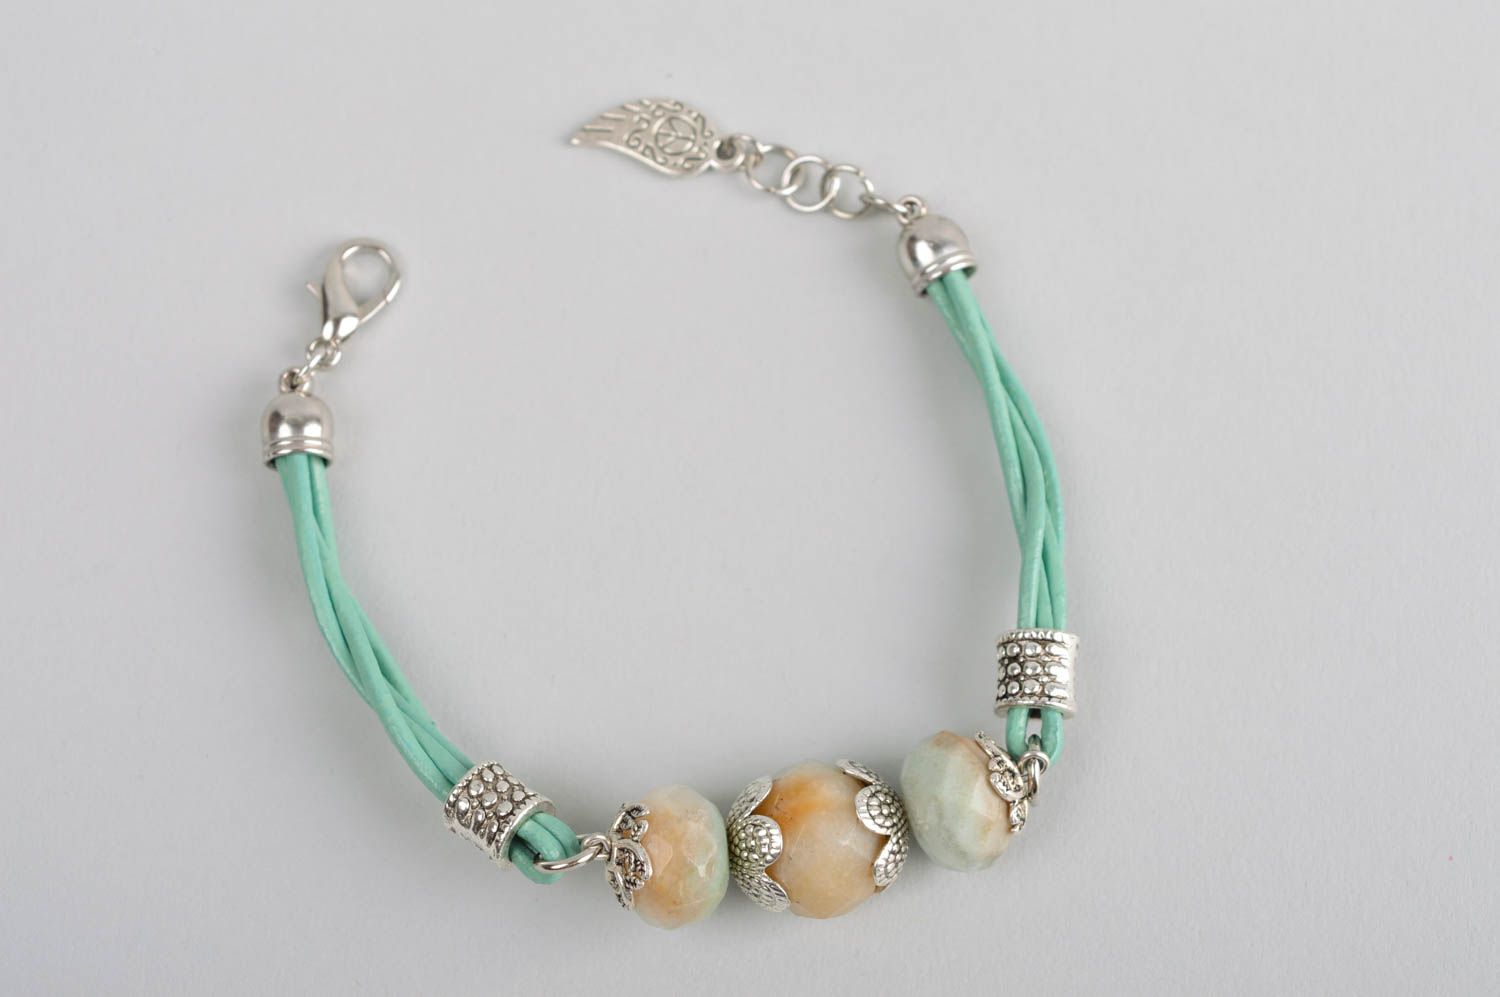 Handmade gemstone bracelet leather bracelet beaded bracelet designs gift ideas photo 5